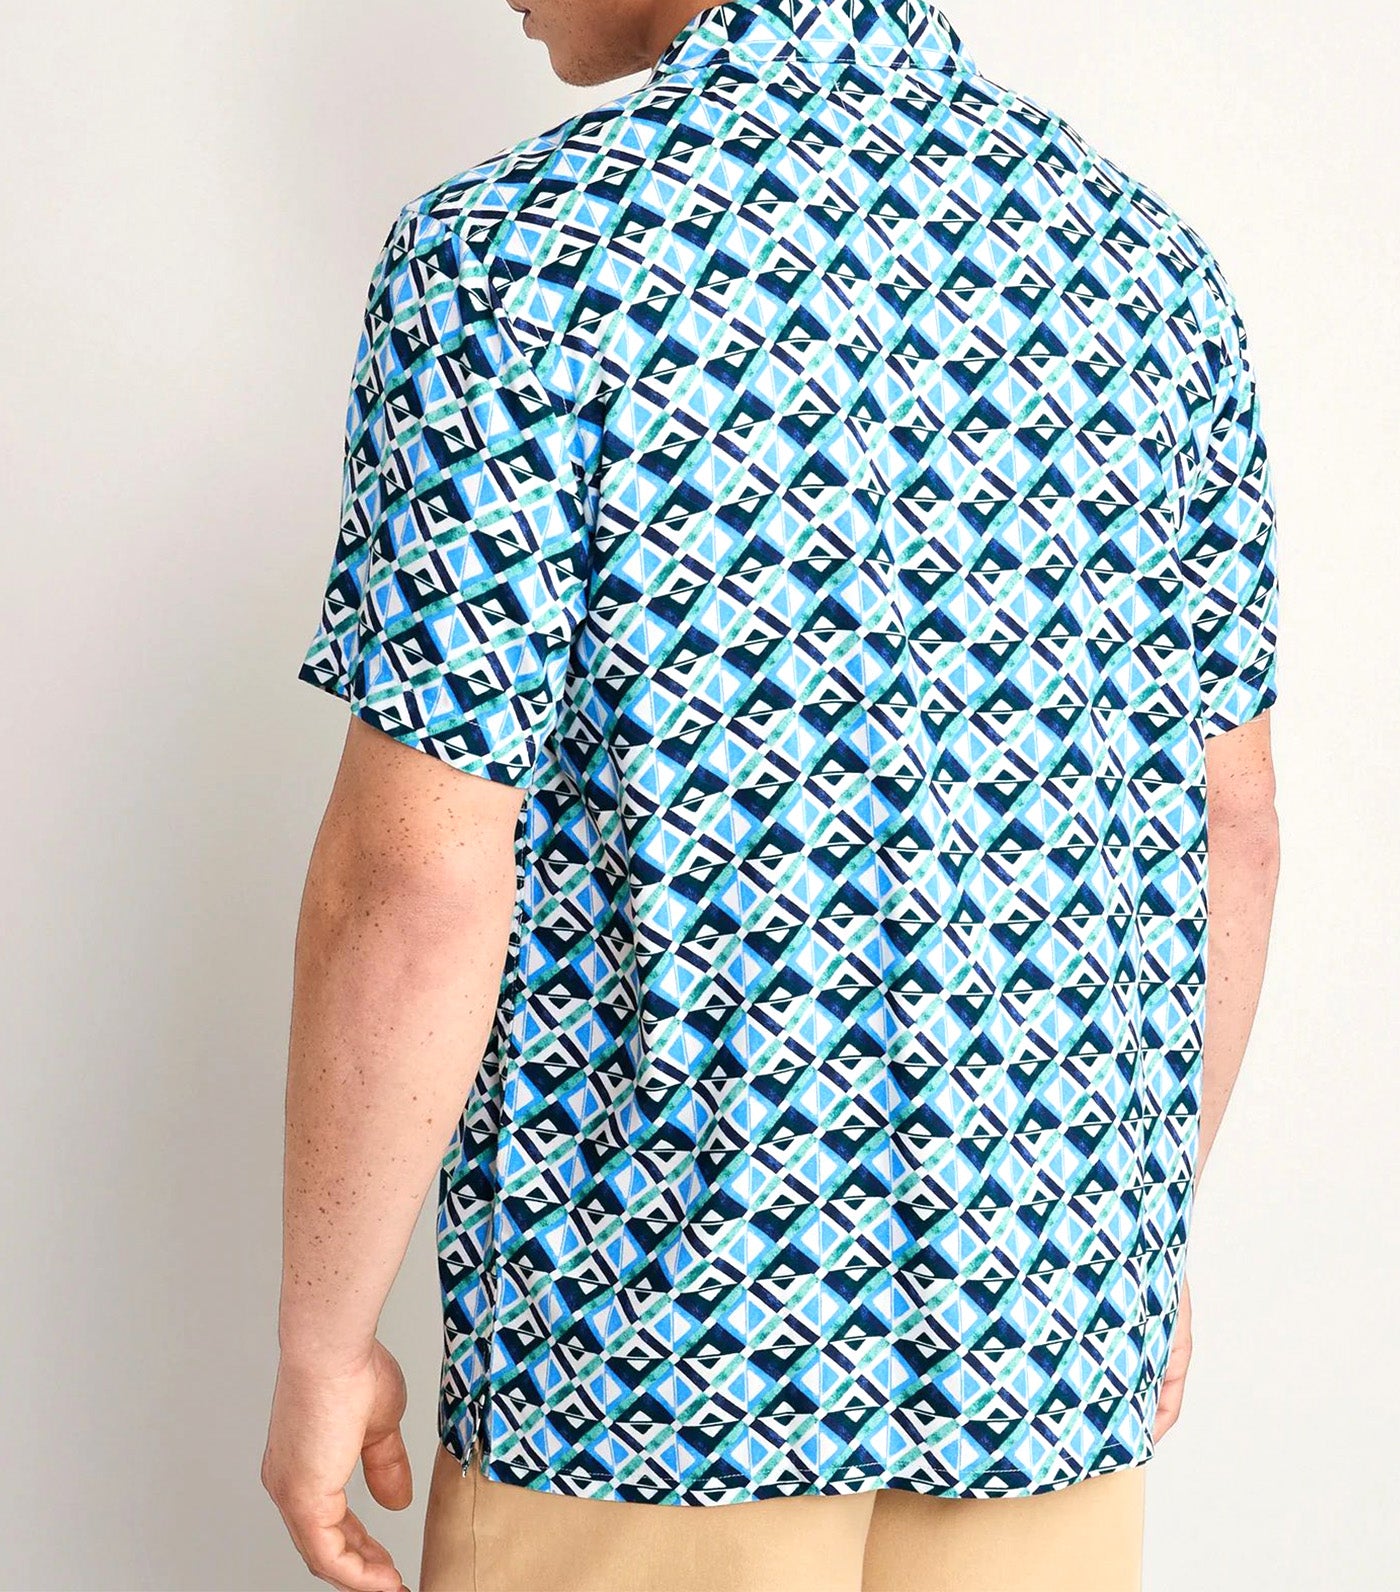 Short-Sleeve Printed Camp Shirt for Men Let's Make A Teal